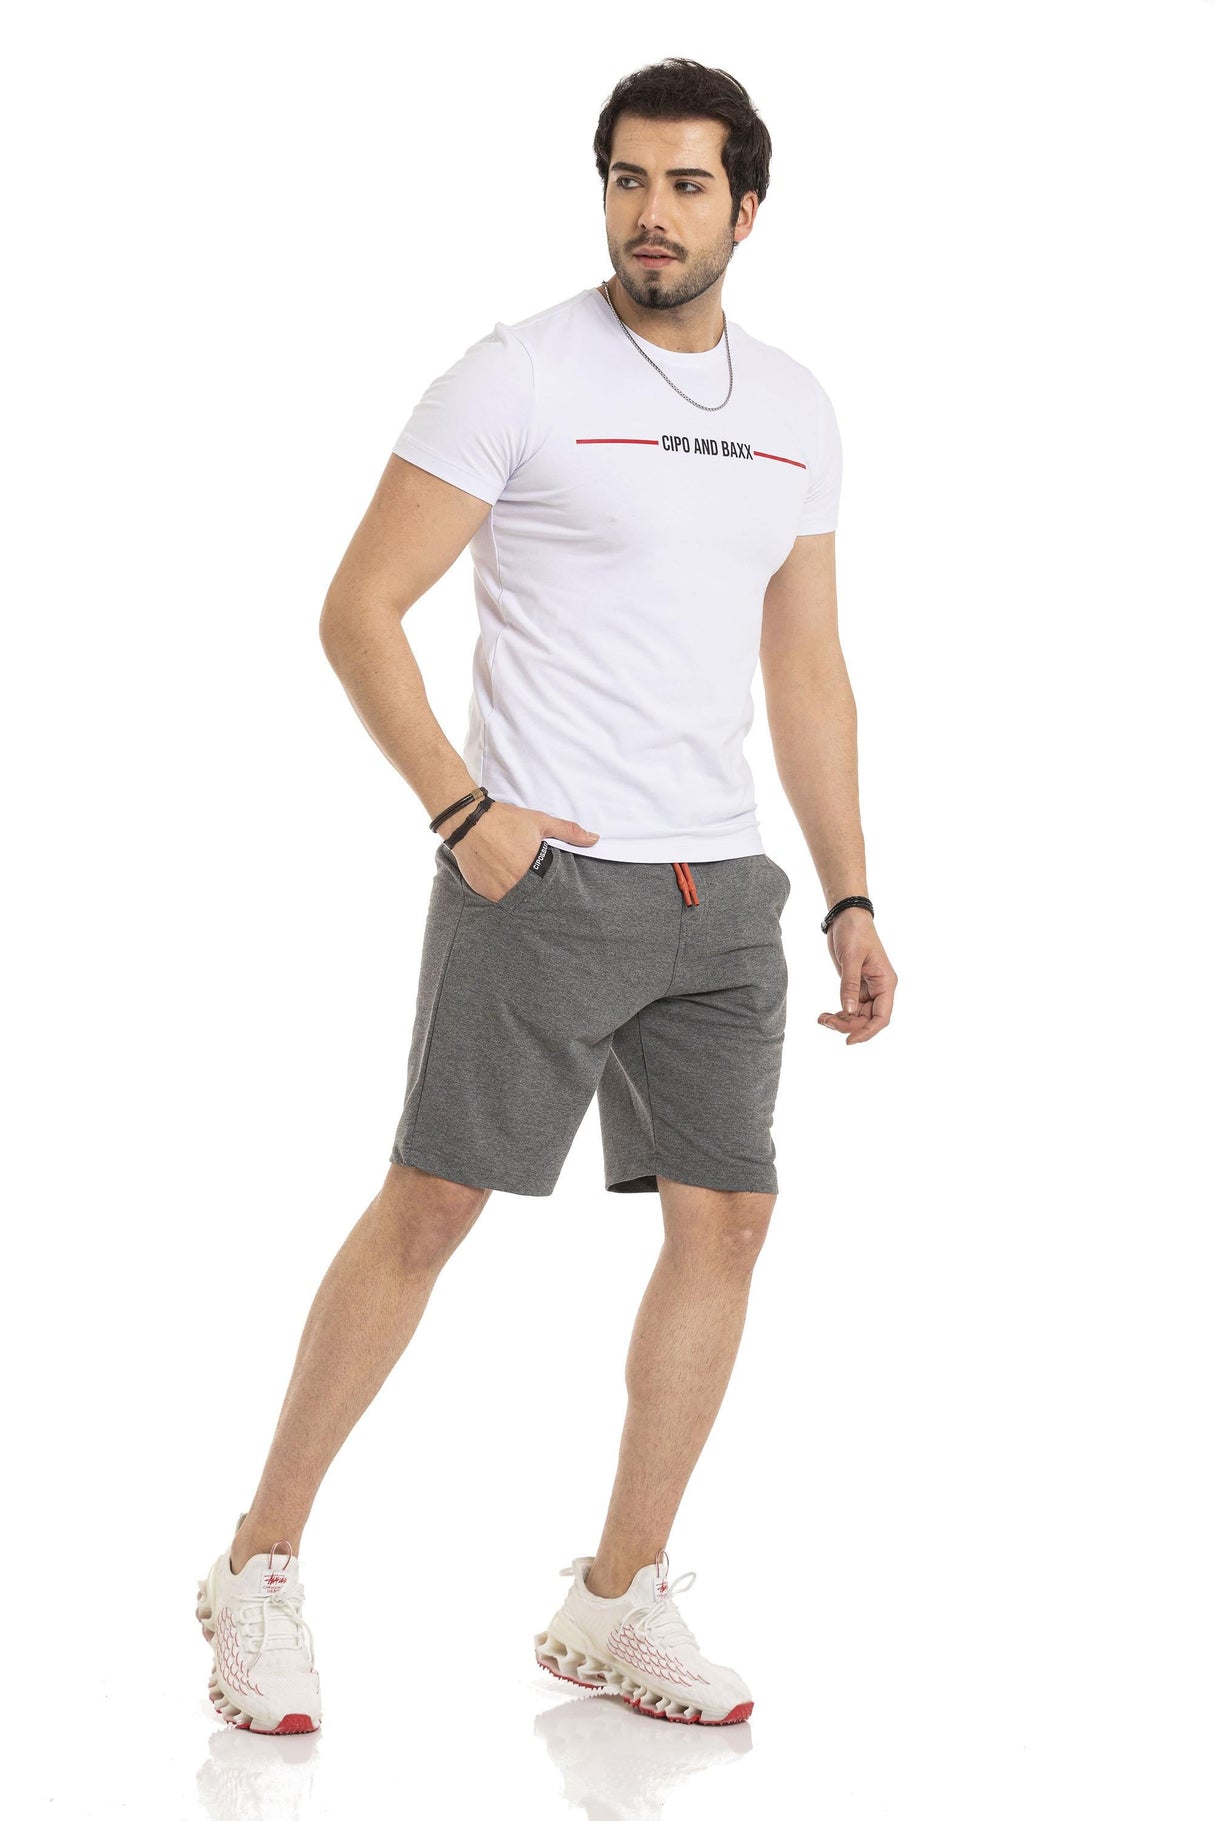 CK271 Herren Capri Shorts Casual Look